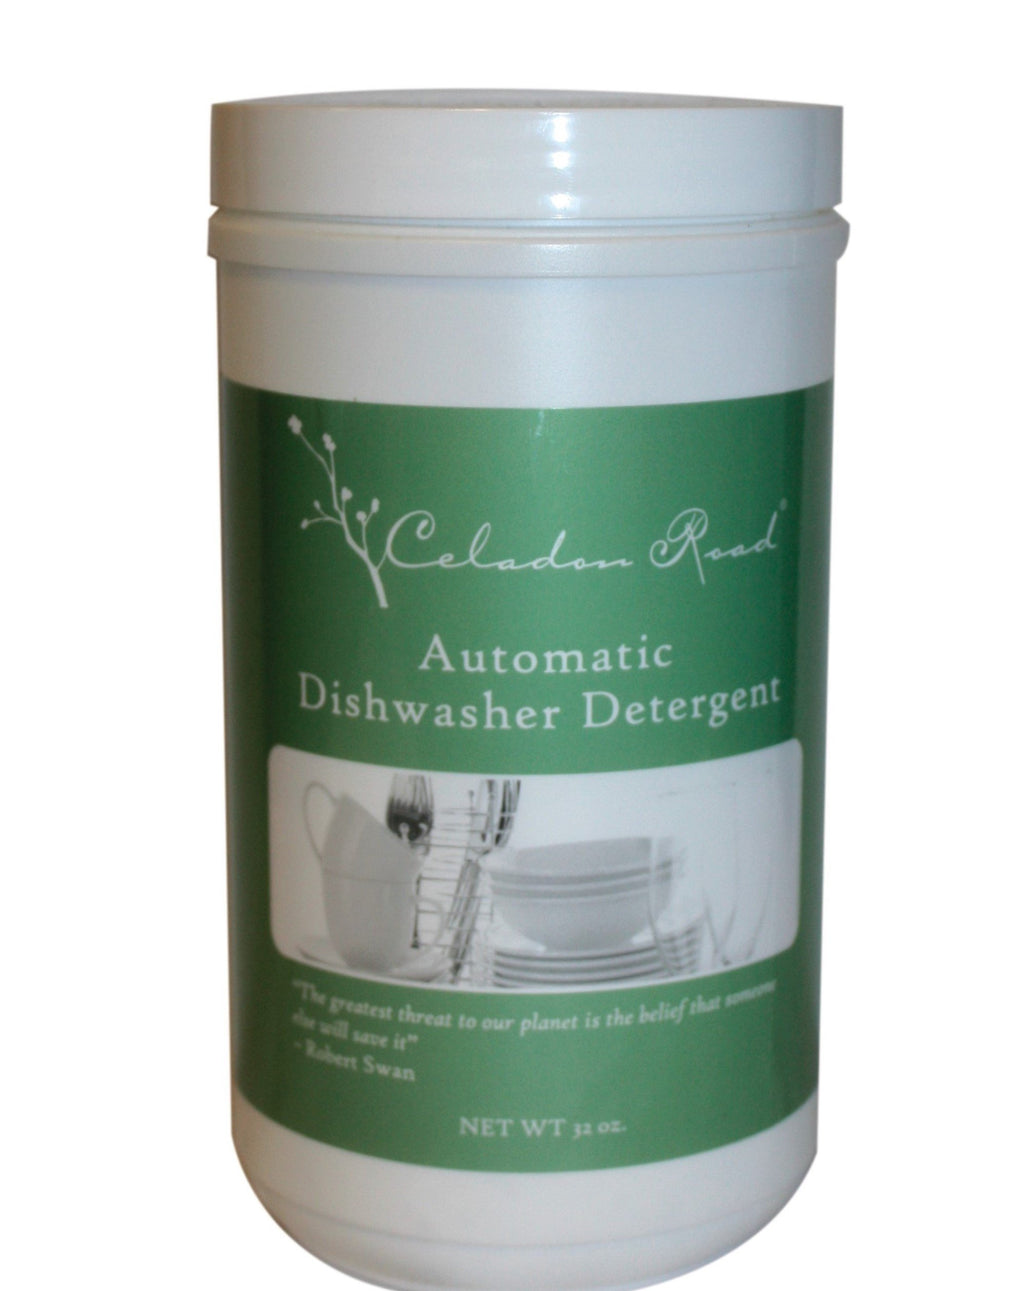 Automatic Dish Detergent- Celadon Road- www.celadonroad.com